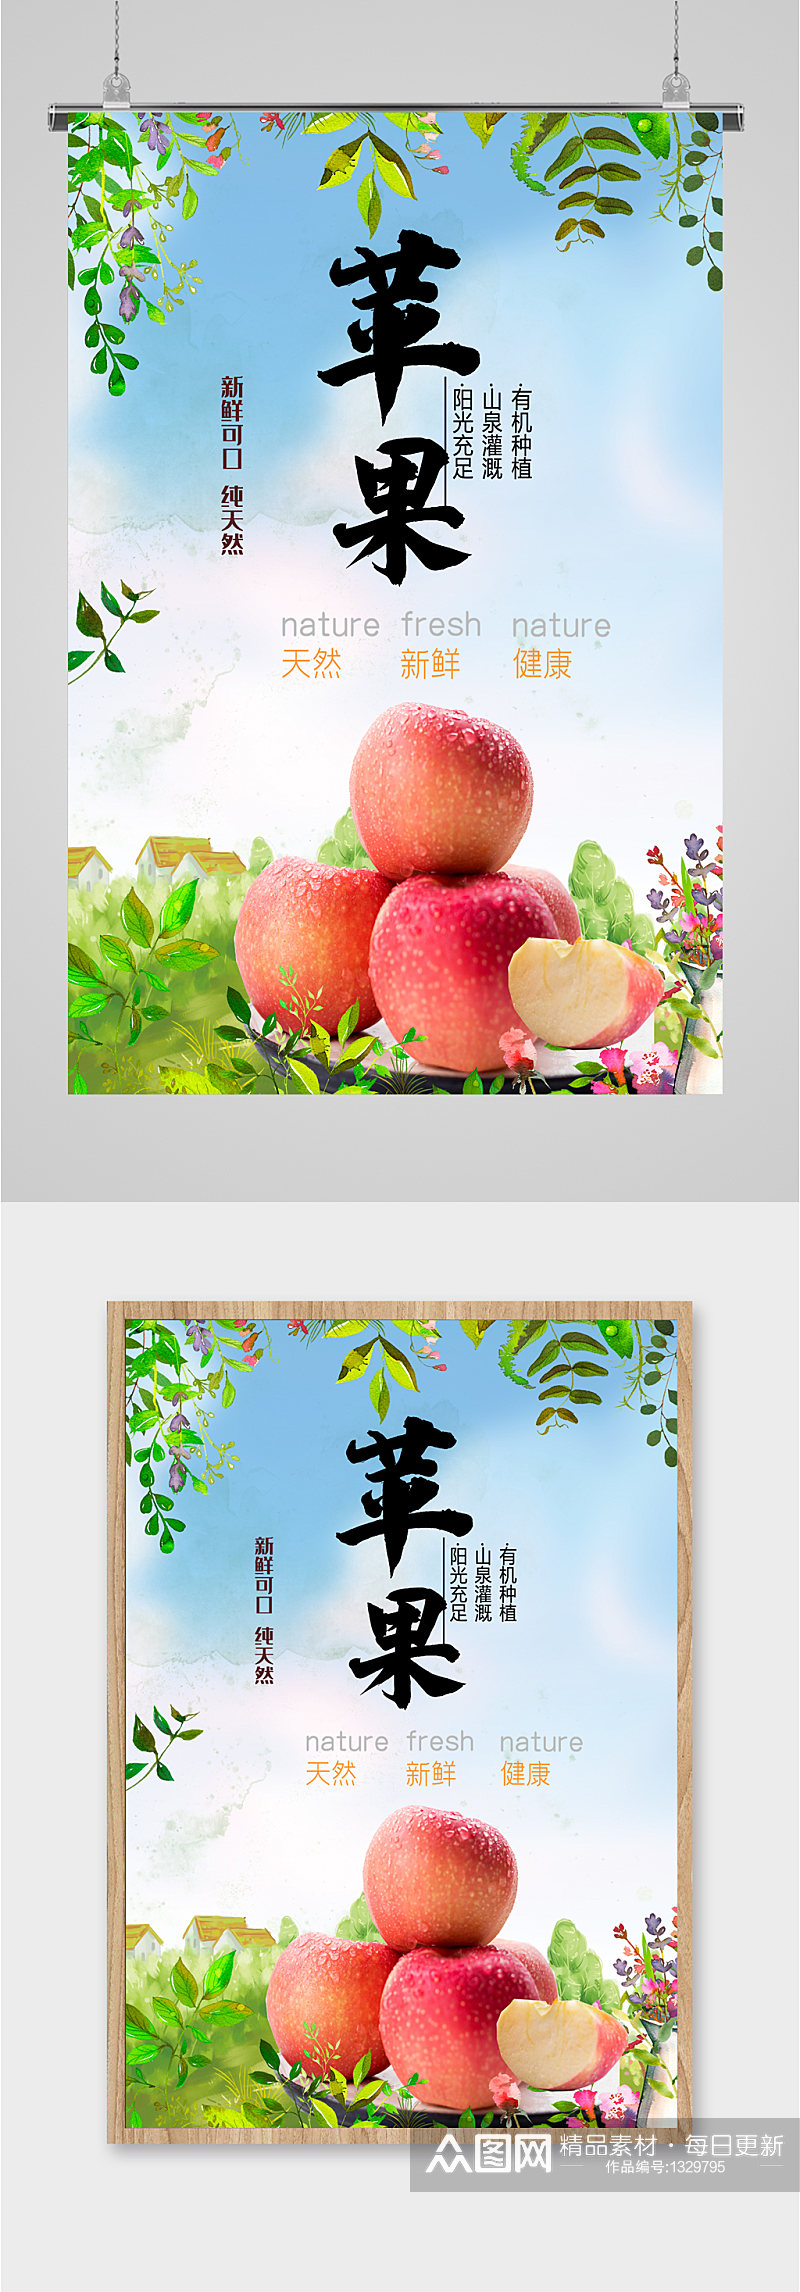 苹果水果促销海报素材